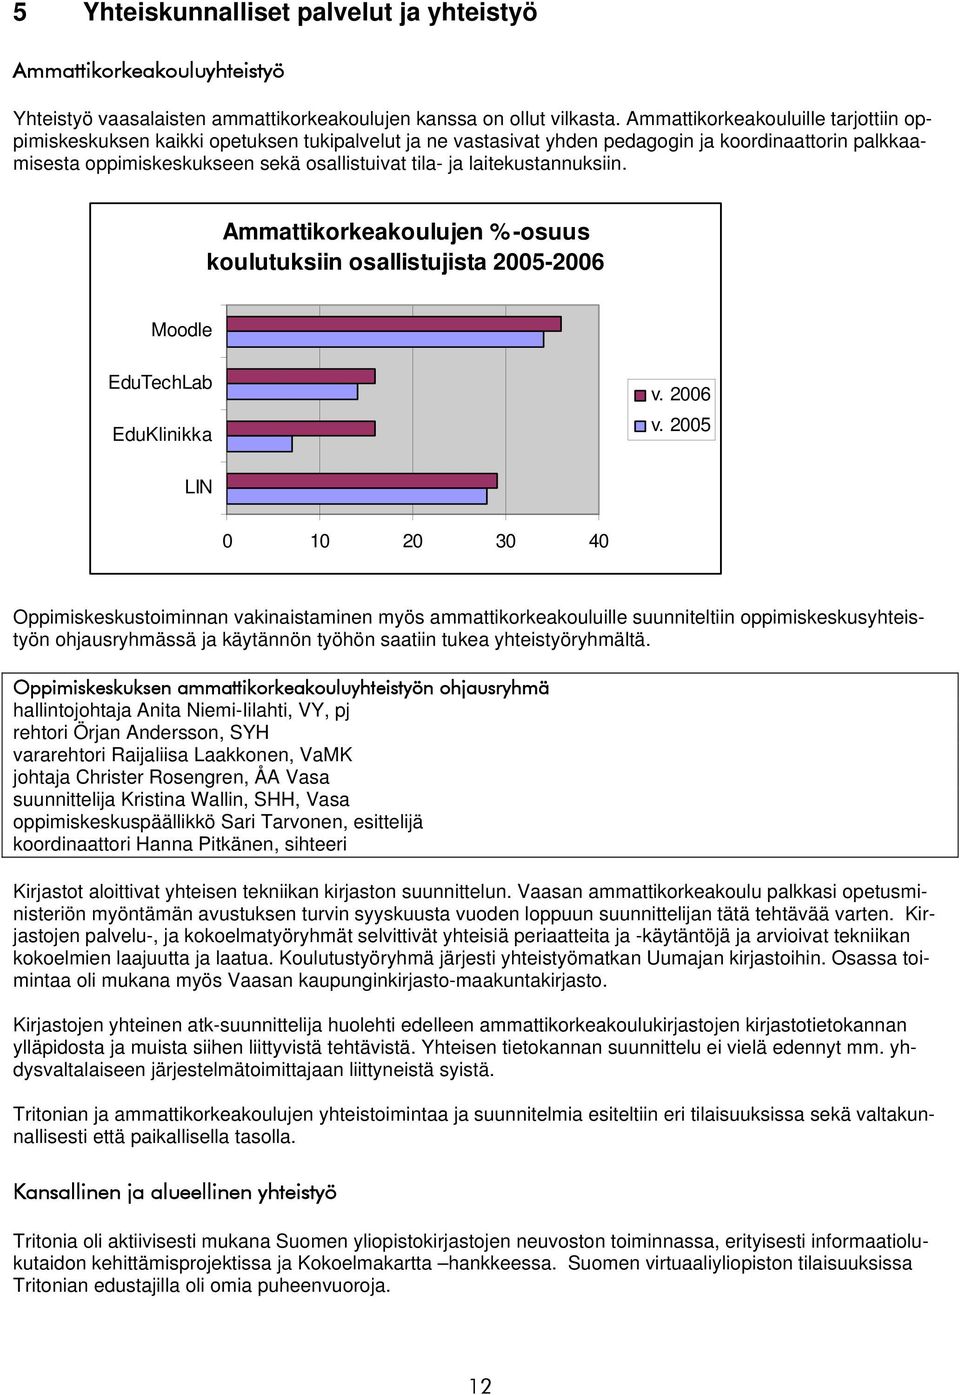 laitekustannuksiin. Ammattikorkeakoulujen %-osuus koulutuksiin osallistujista 2005-2006 Moodle EduTechLab EduKlinikka v. 2006 v.